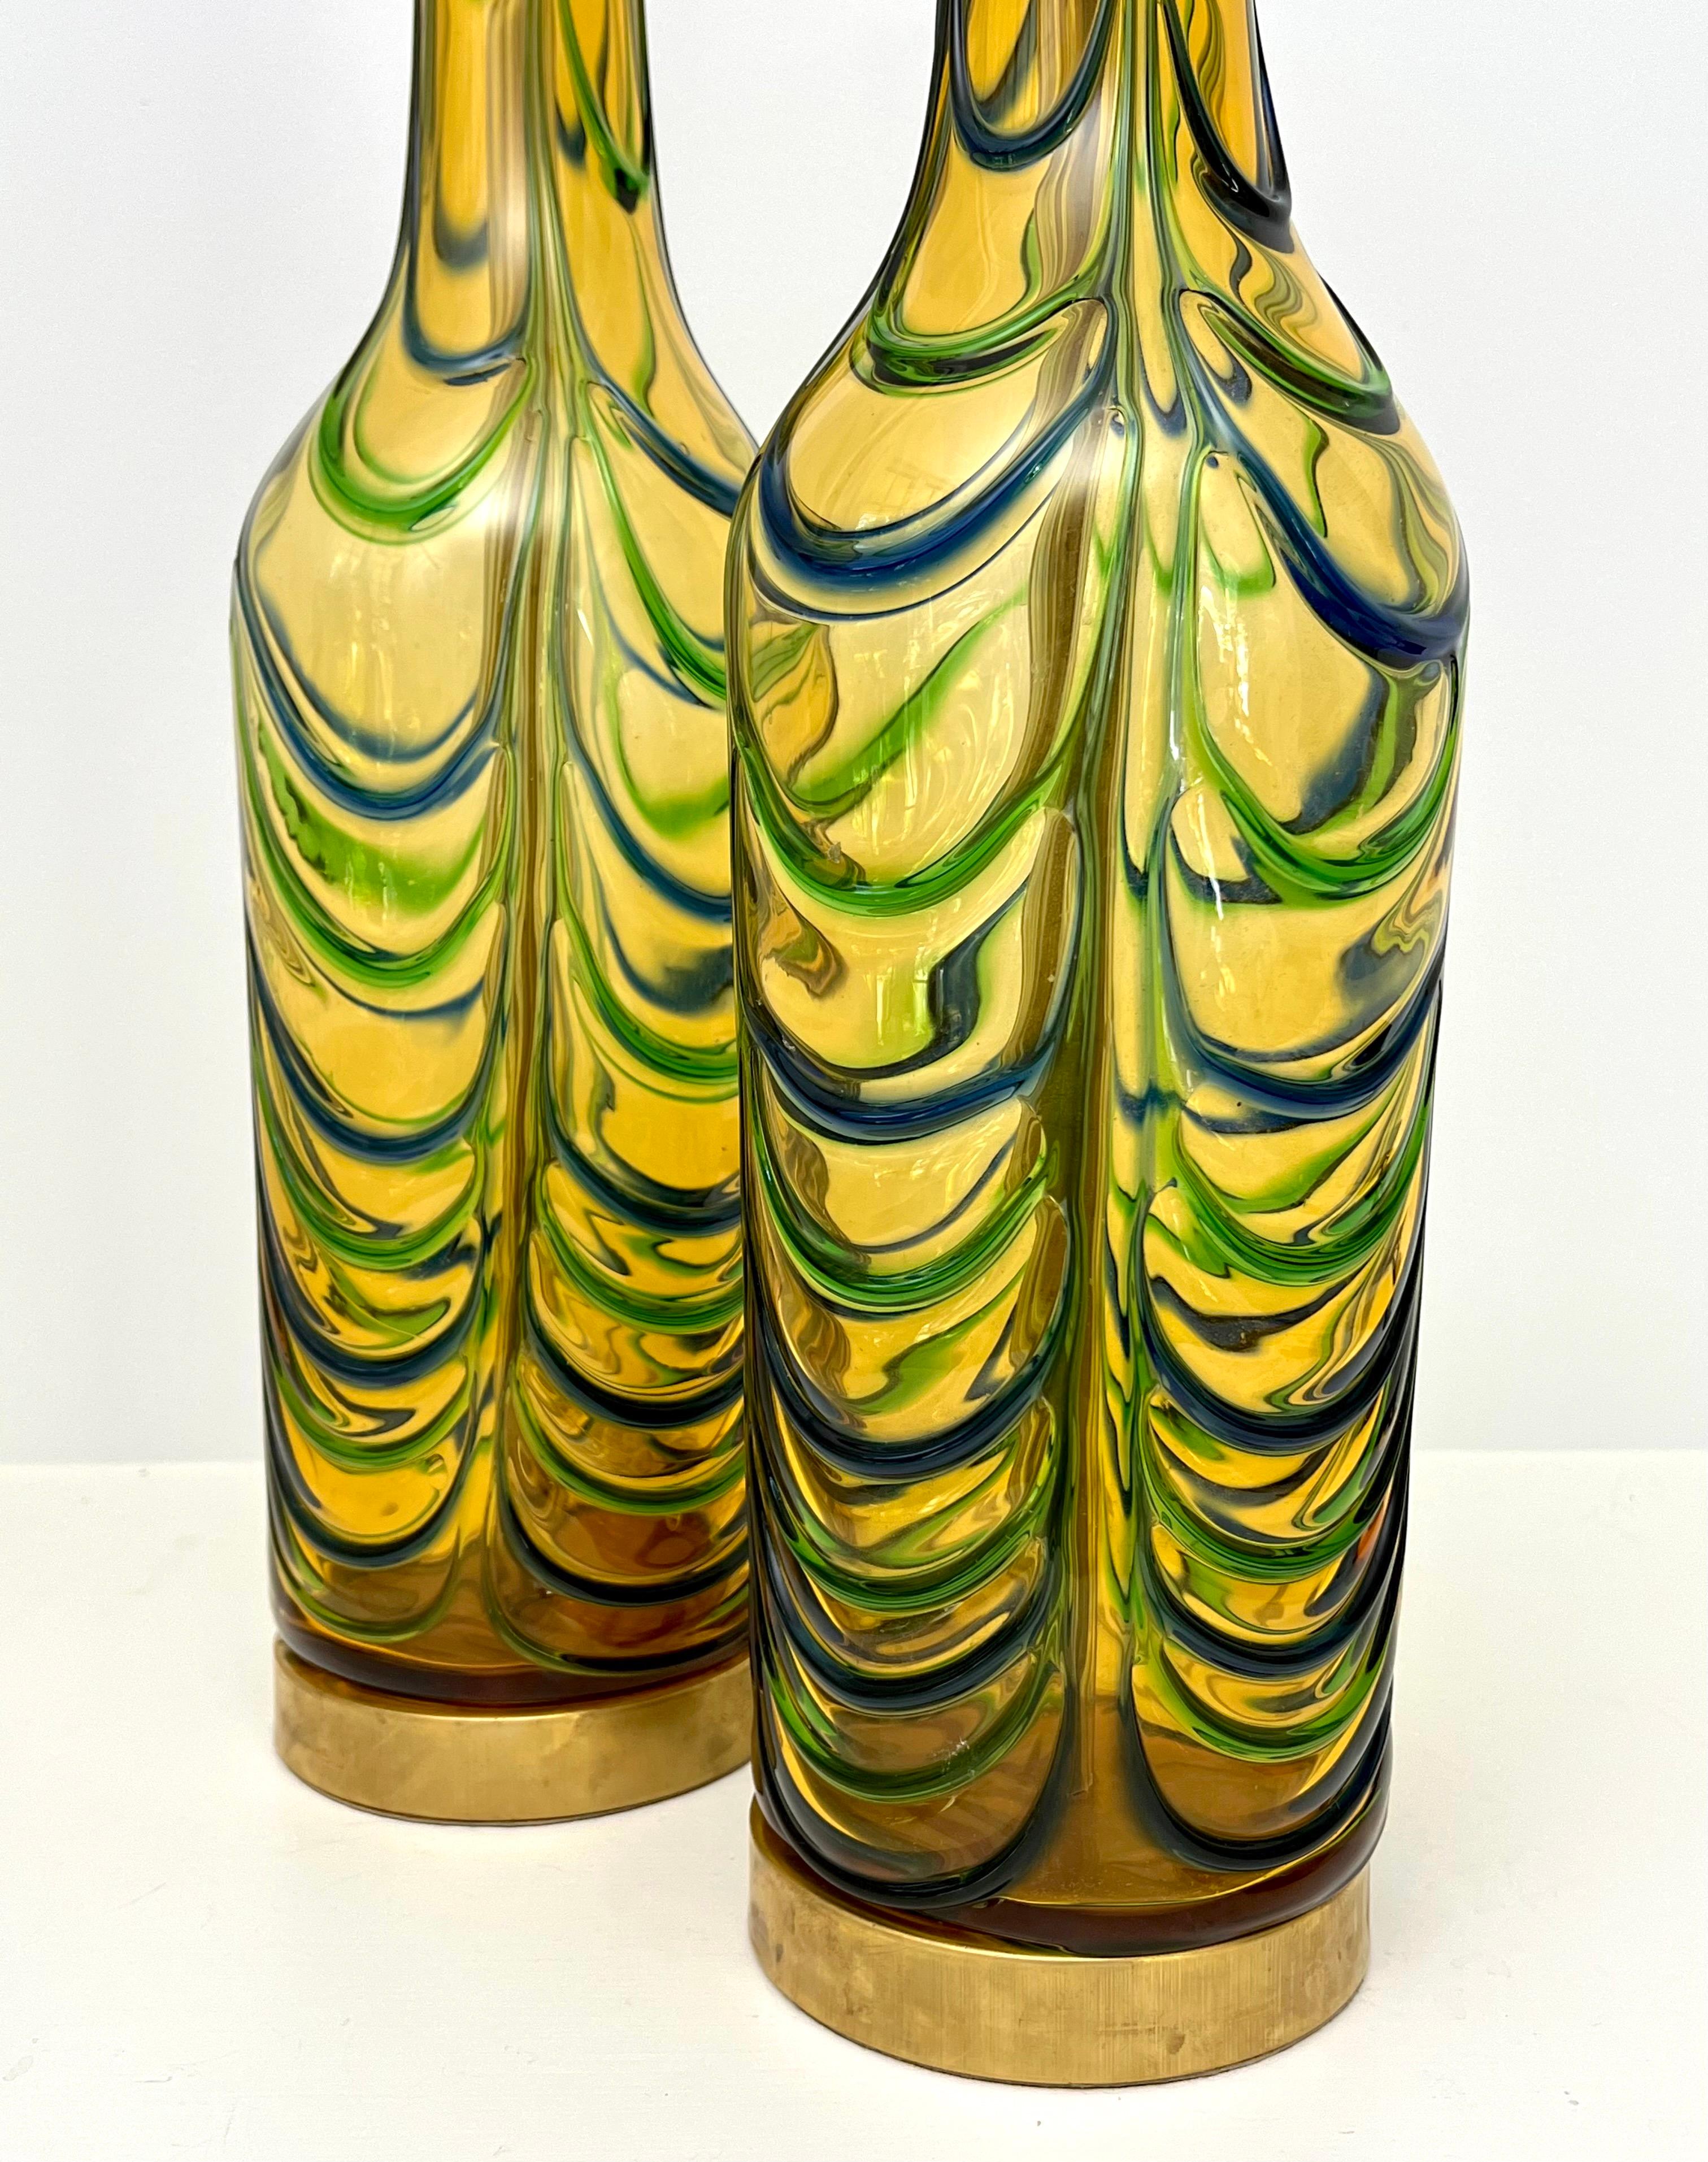 Superbe paire de lampes de table en verre de Murano du milieu du siècle dernier par Seguso. Il s'agit de lampes uniques soufflées à la main avec des vagues bleues et vertes sur un fond d'or jaunâtre. Un design transitionnel idéal pour les décors